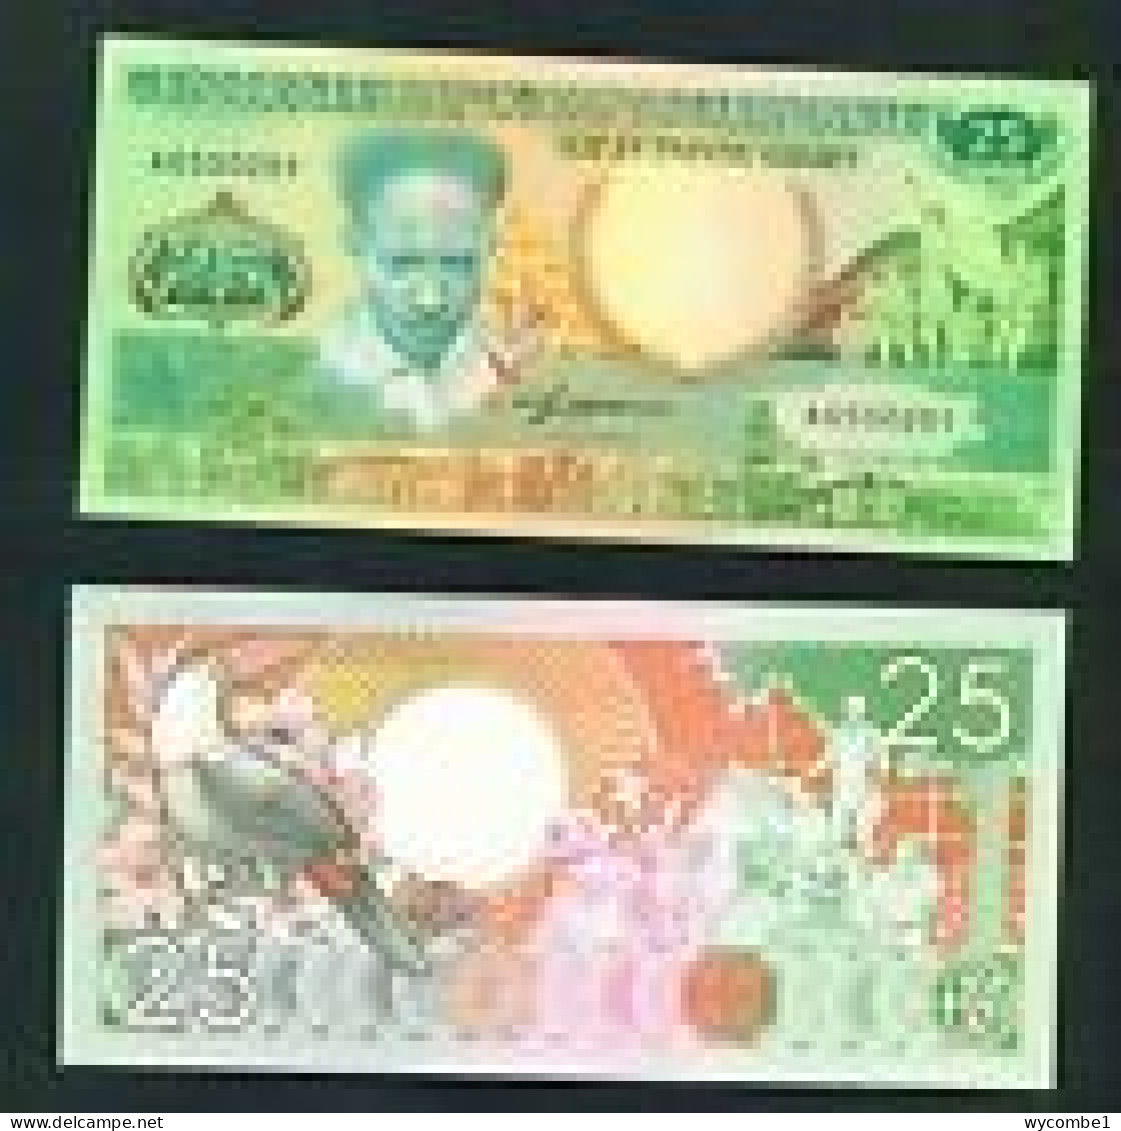 SURINAM - 1988 25 Gulden UNC - Surinam